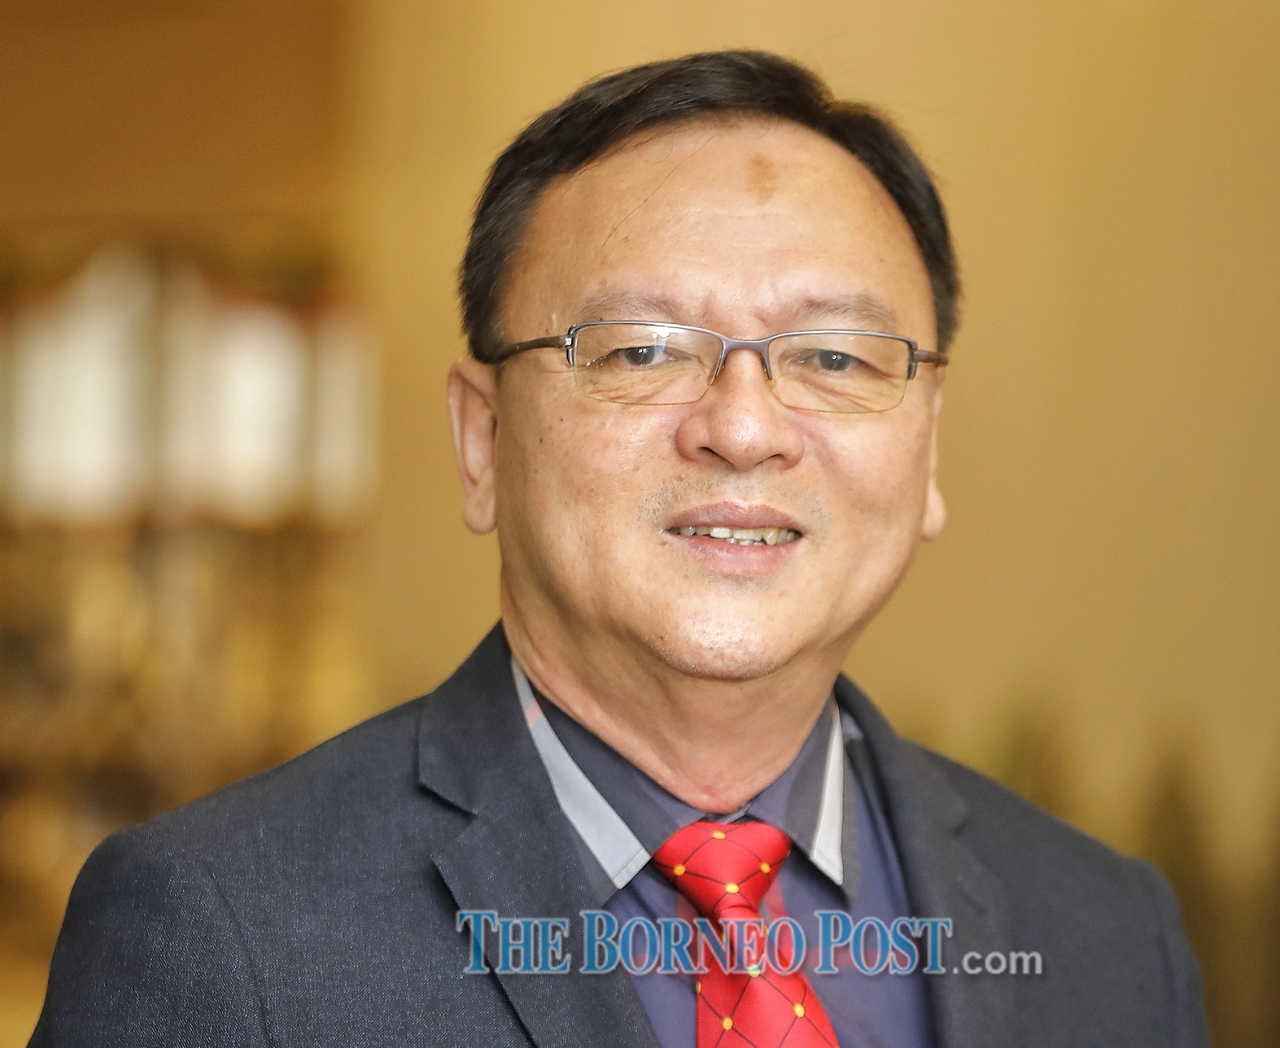 Suivez les traces d’un collègue, excusez-vous auprès des habitants du Sarawak, dit Lo à Chong